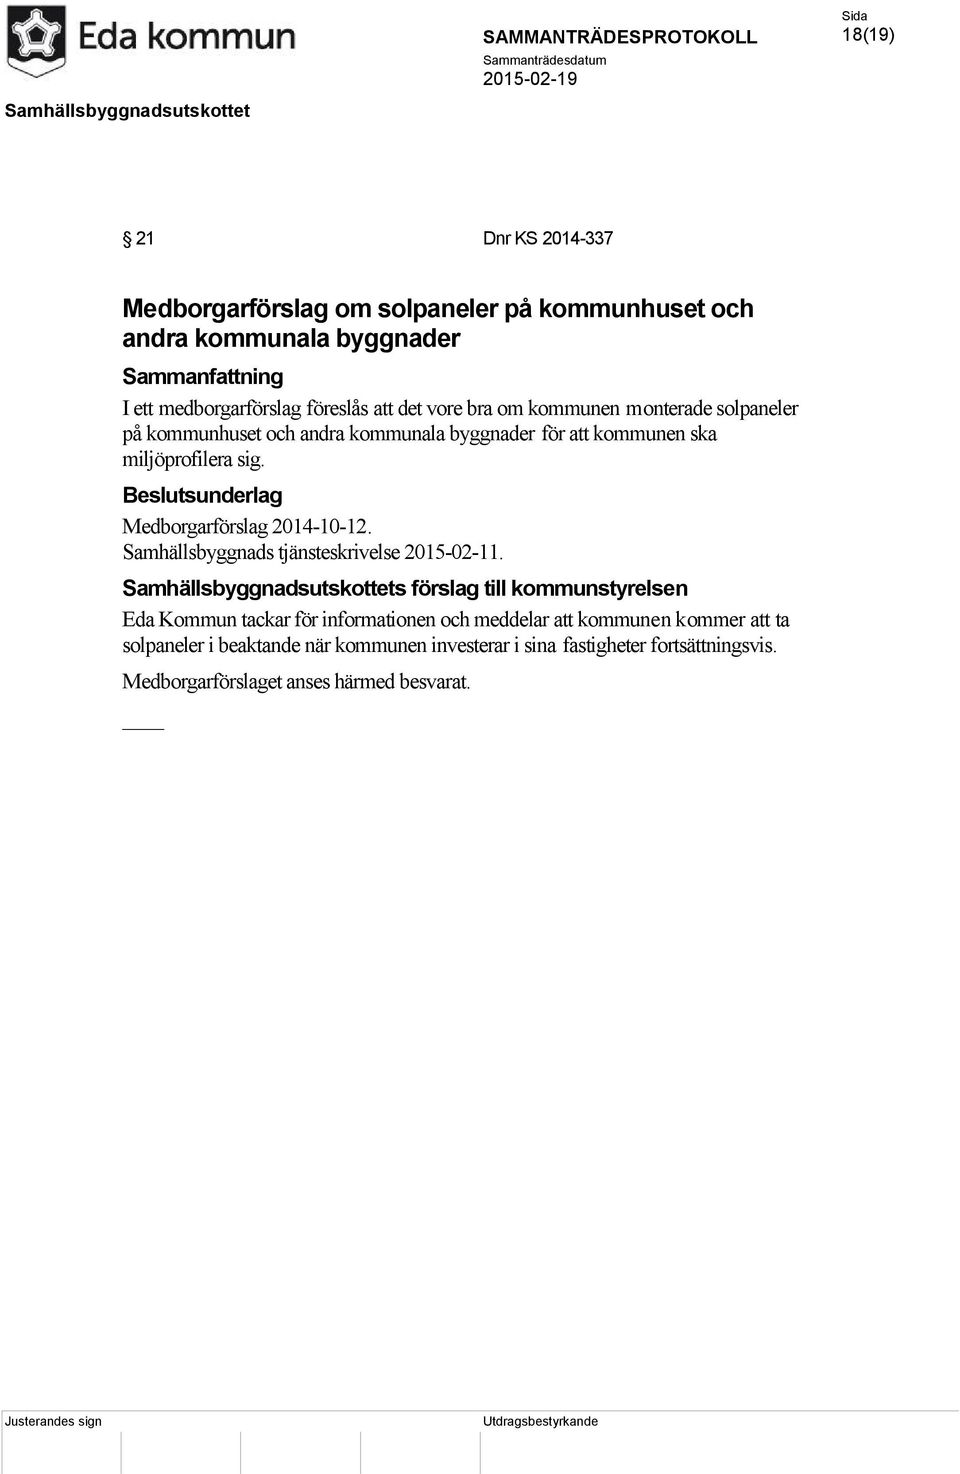 Medborgarförslag 2014-10-12. Samhällsbyggnads tjänsteskrivelse 2015-02-11.